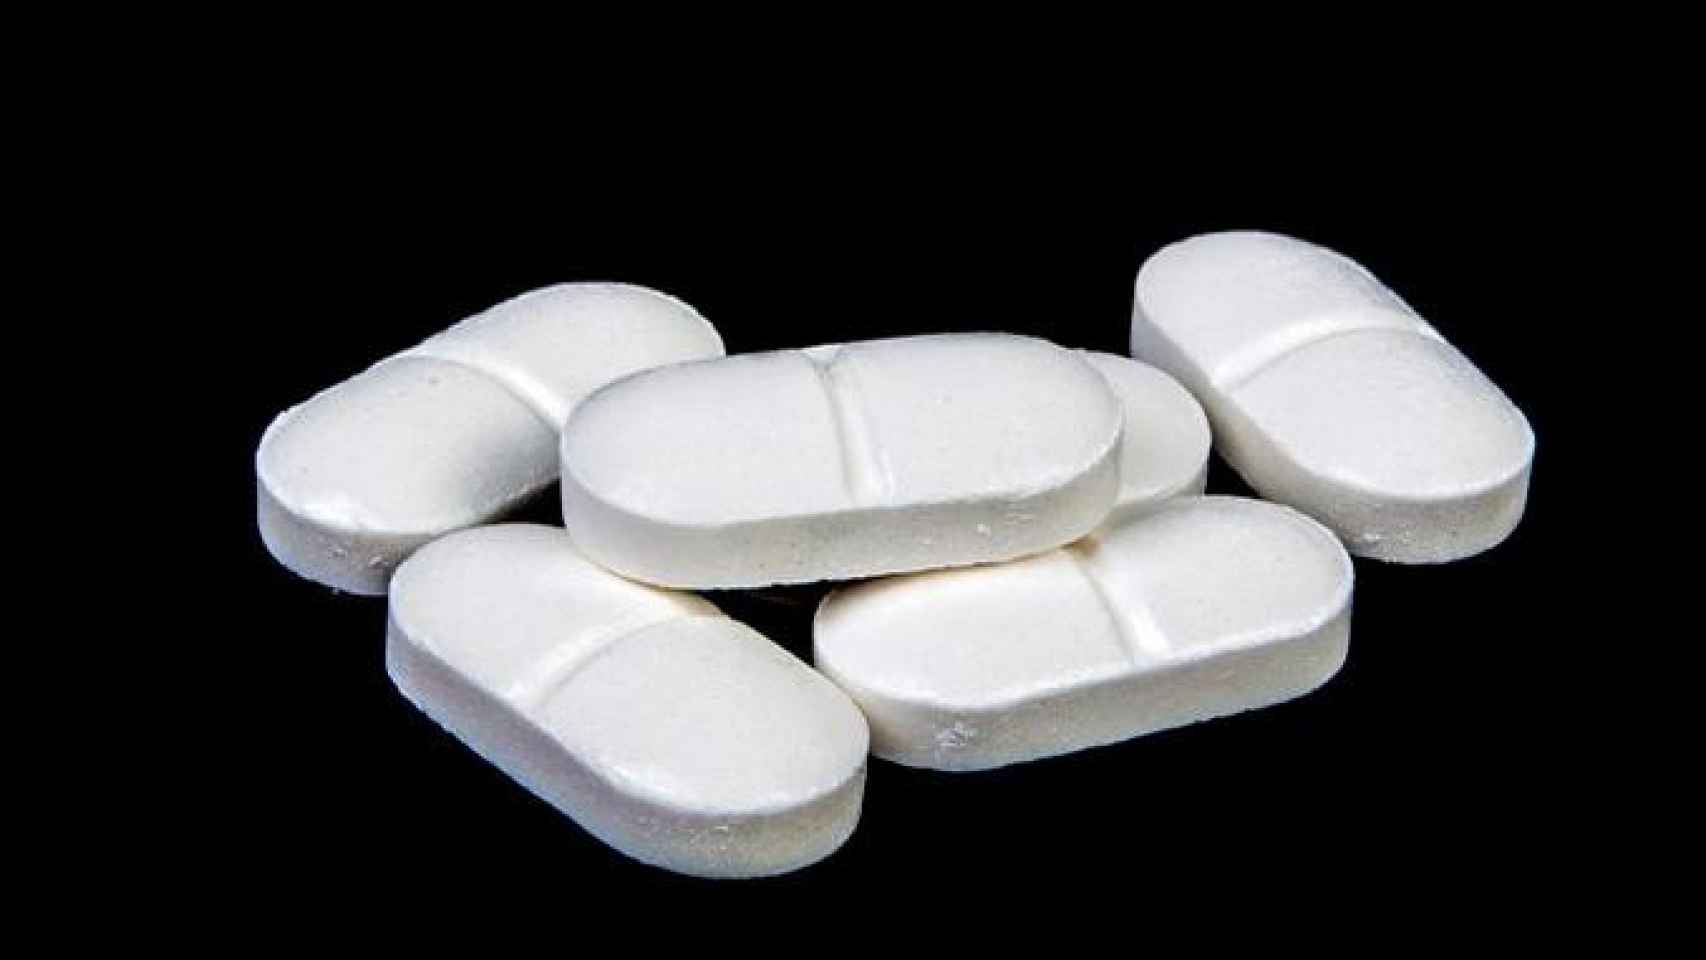 Seis pastillas de paracetamol